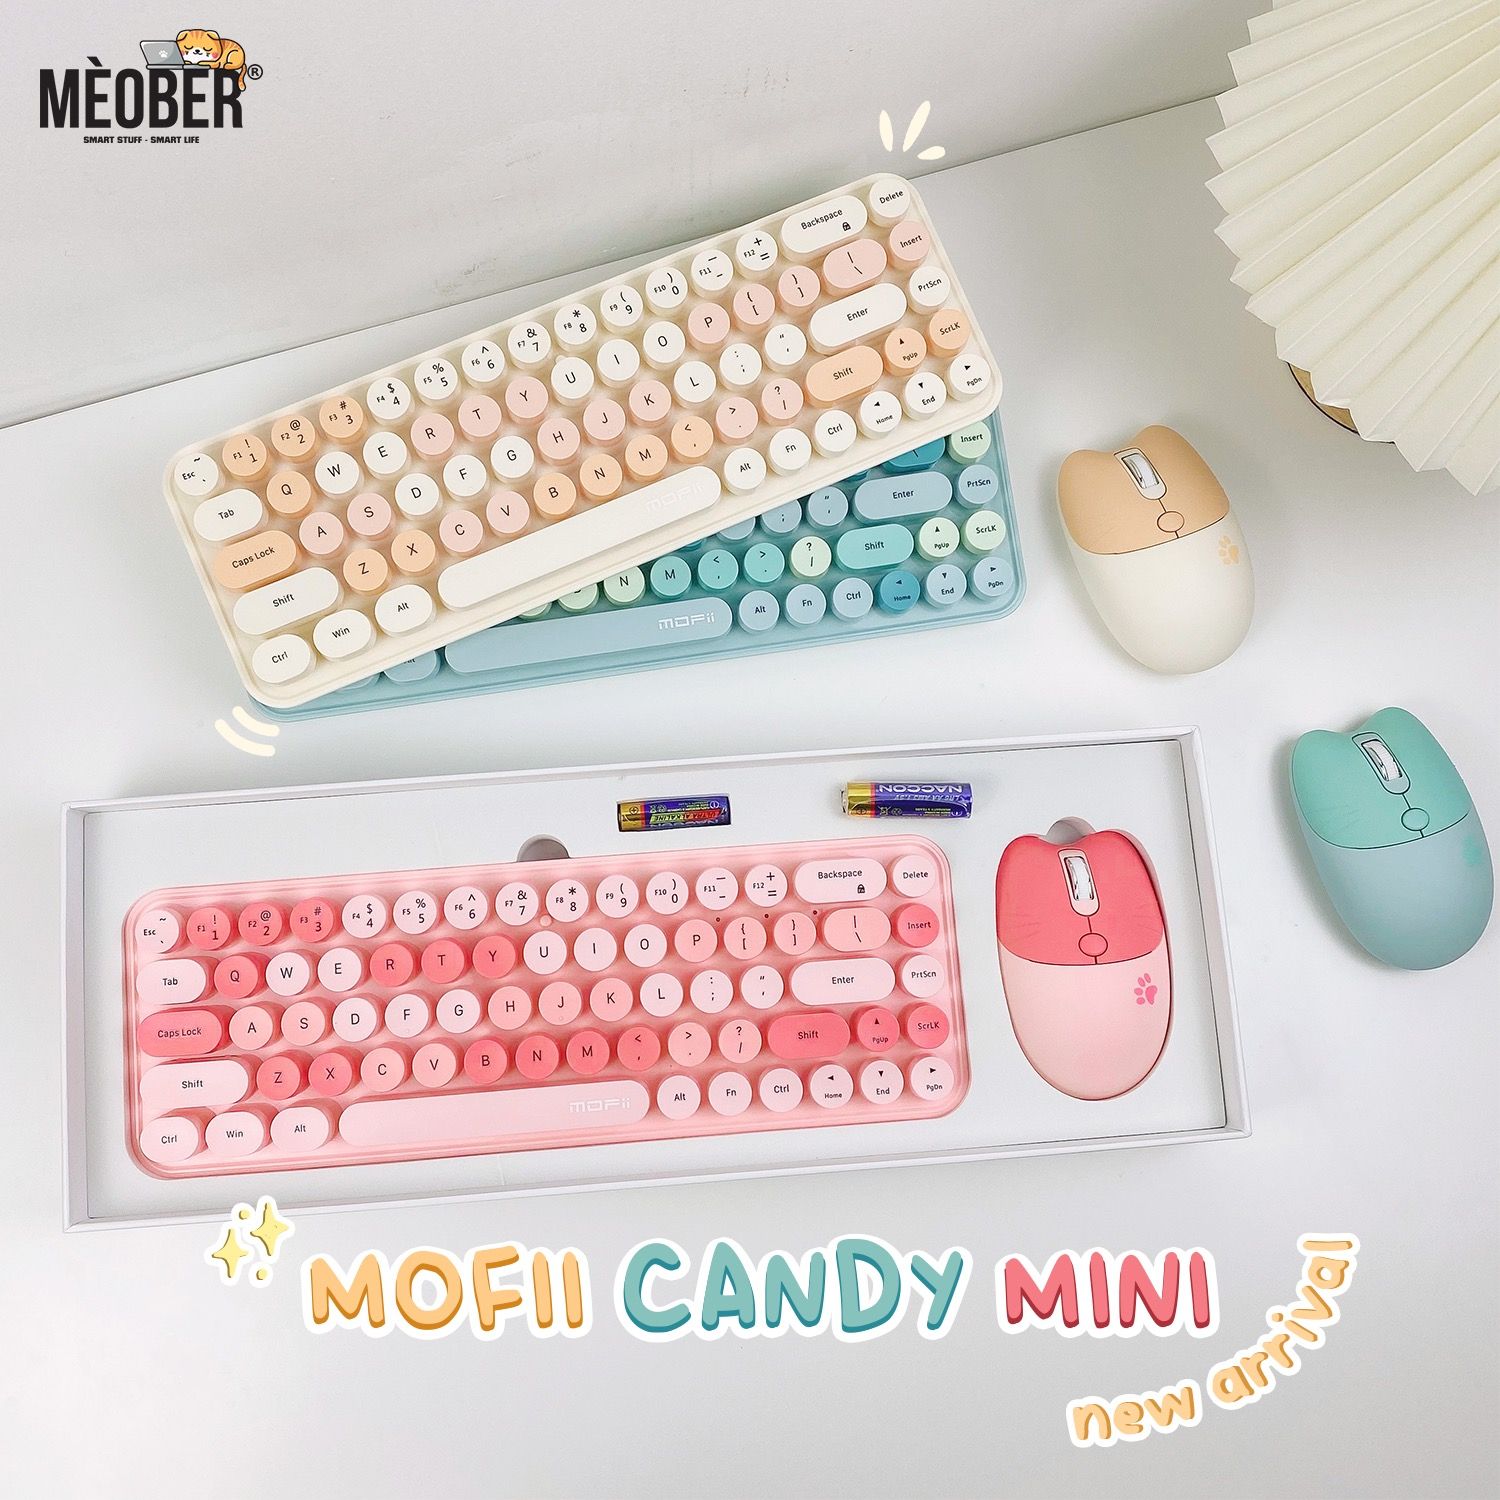  Bộ bàn phím không dây & chuột Silent MOFII Candy Mini dành cho Laptop, iPad, PC v.v 